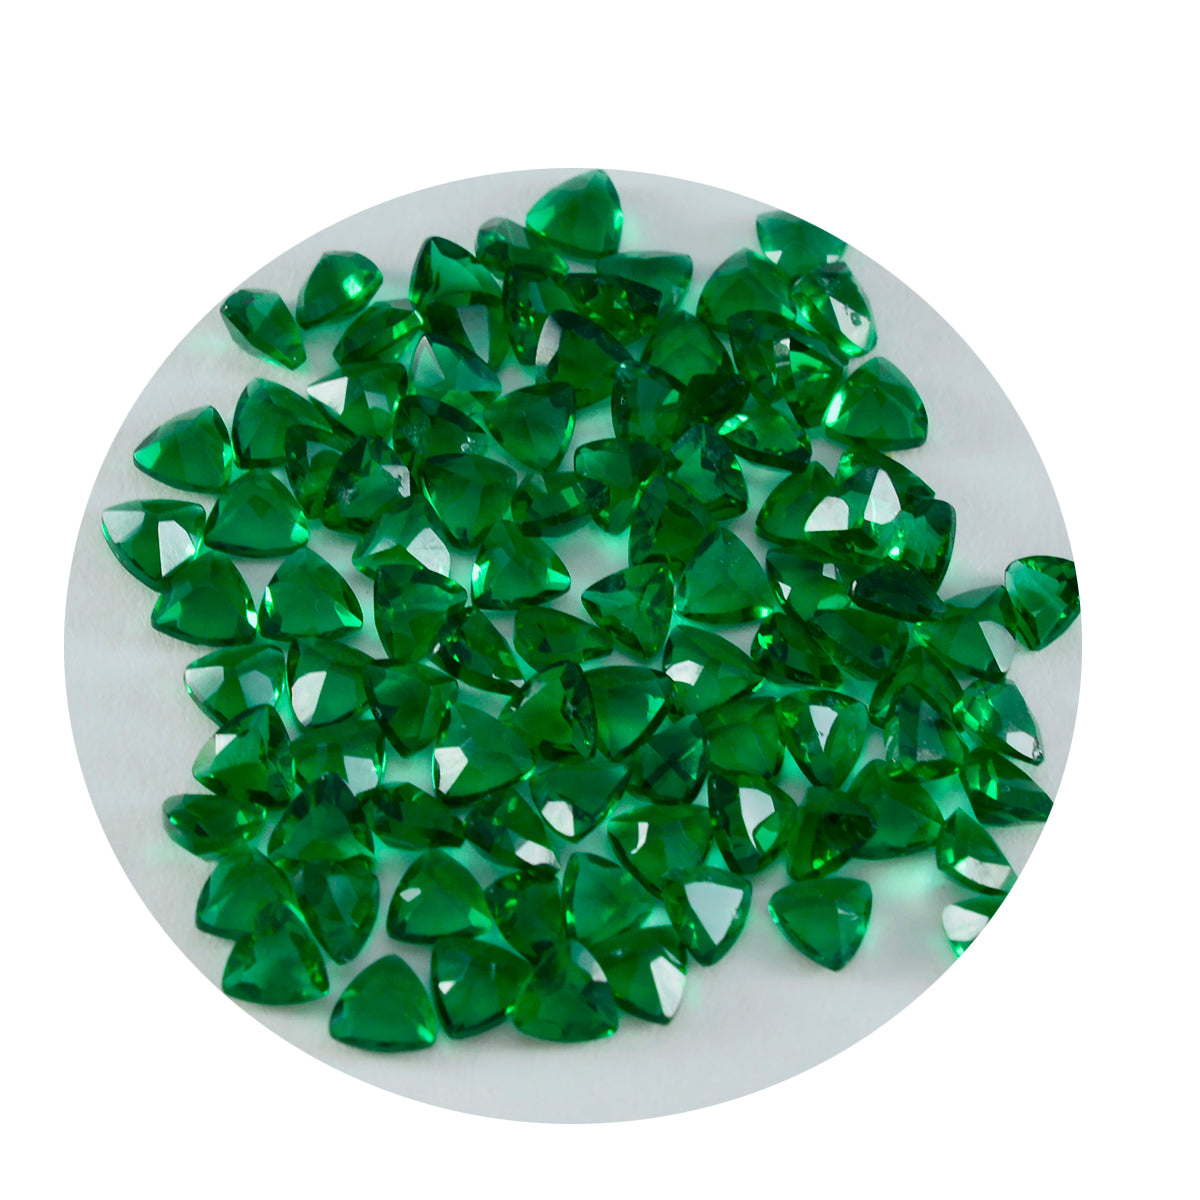 Riyogems 1 Stück grüner Smaragd, CZ, facettiert, 4 x 4 mm, Billionenform, süße Qualitätsedelsteine